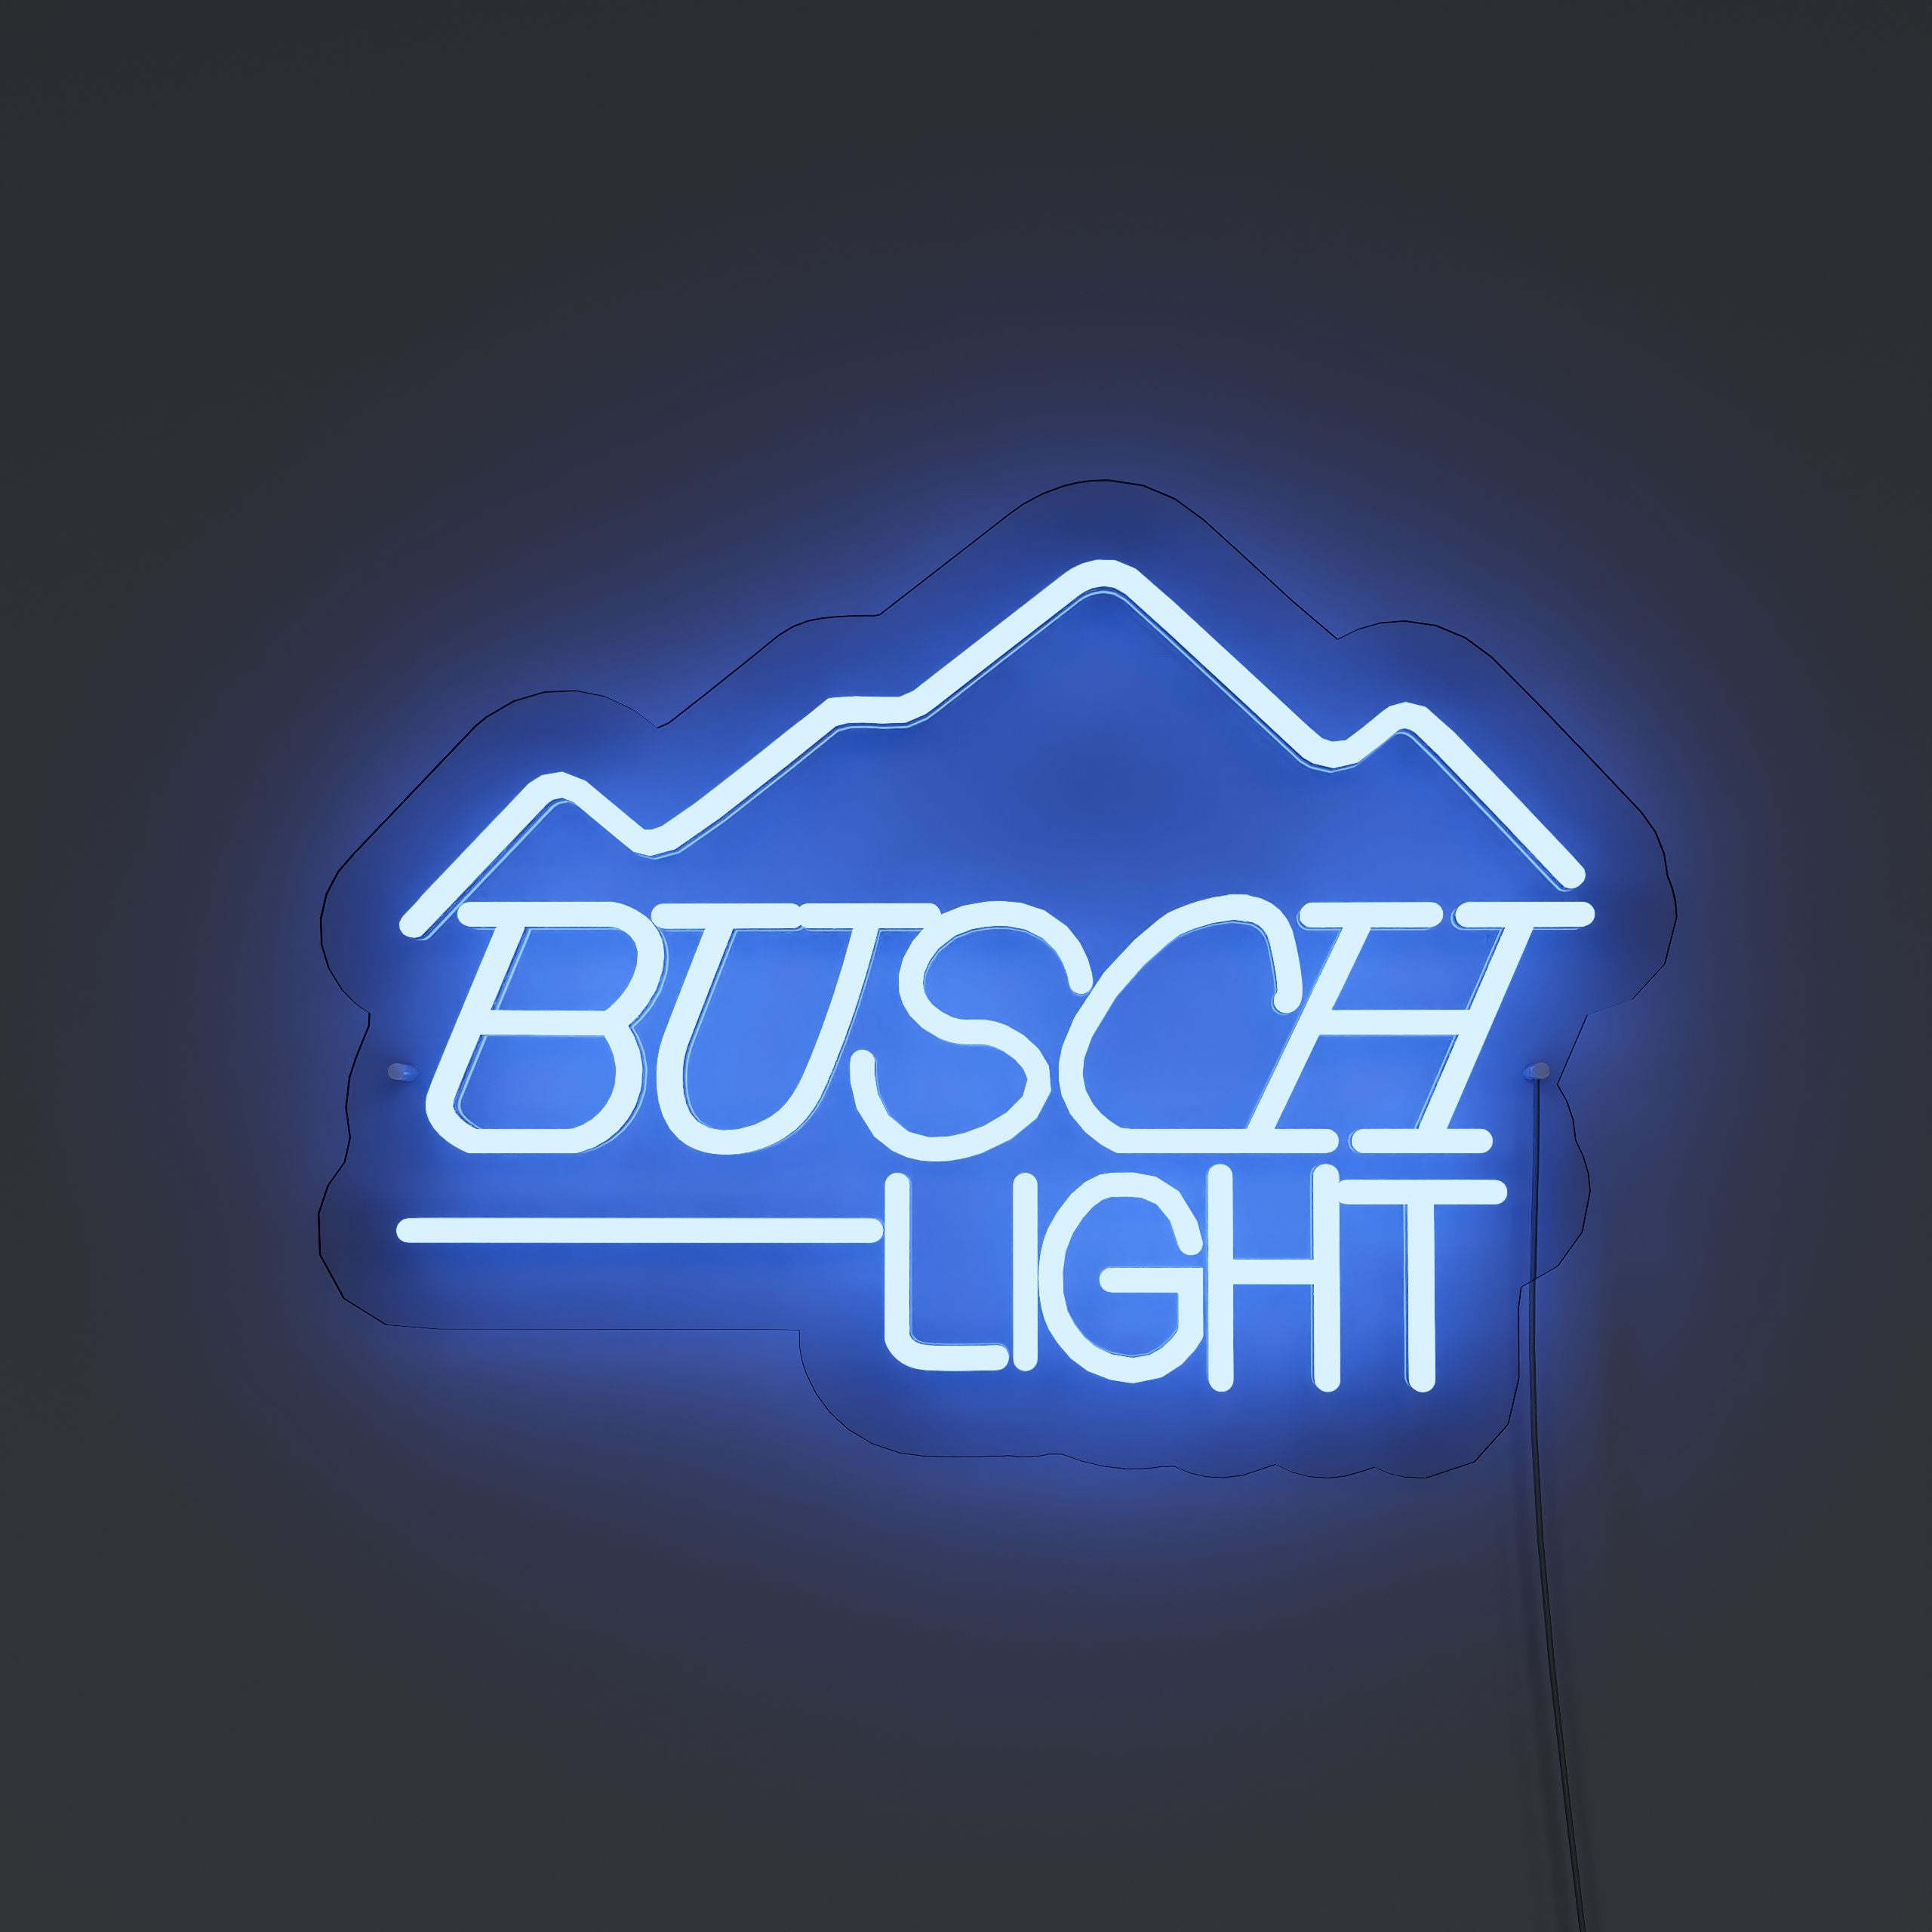 fbusch-light-neon-signs-DarkBlue-Neon-sign-Lite